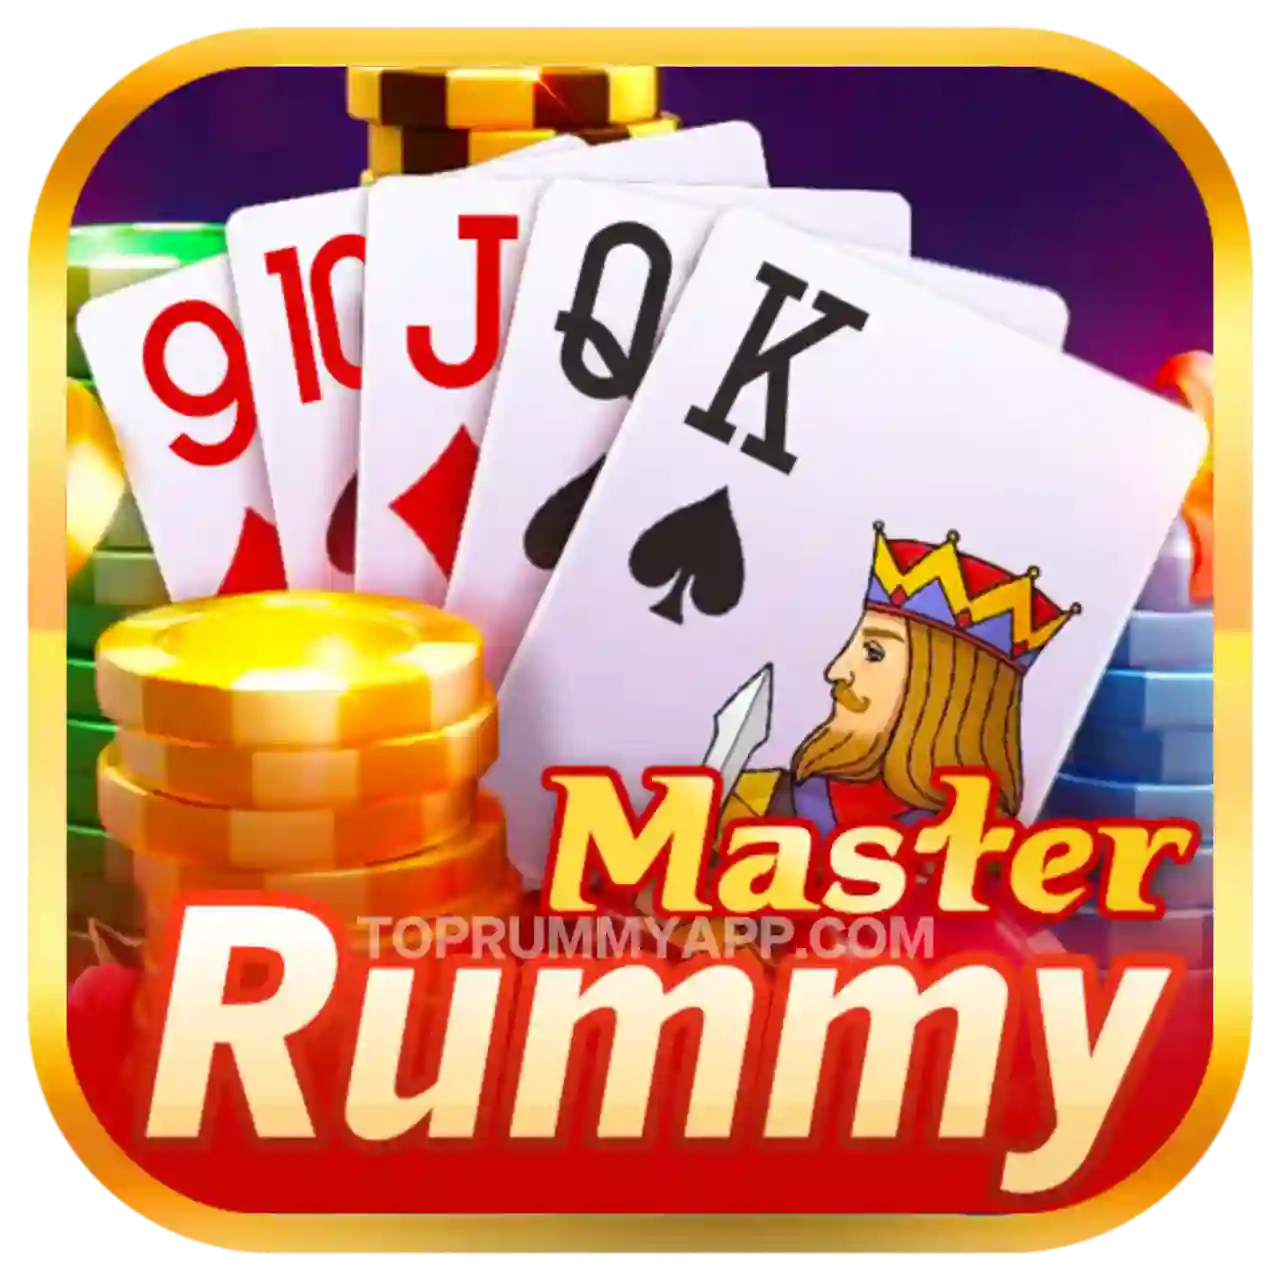 Rummy Master App Download Top Rummy App List ₹51 Bonus